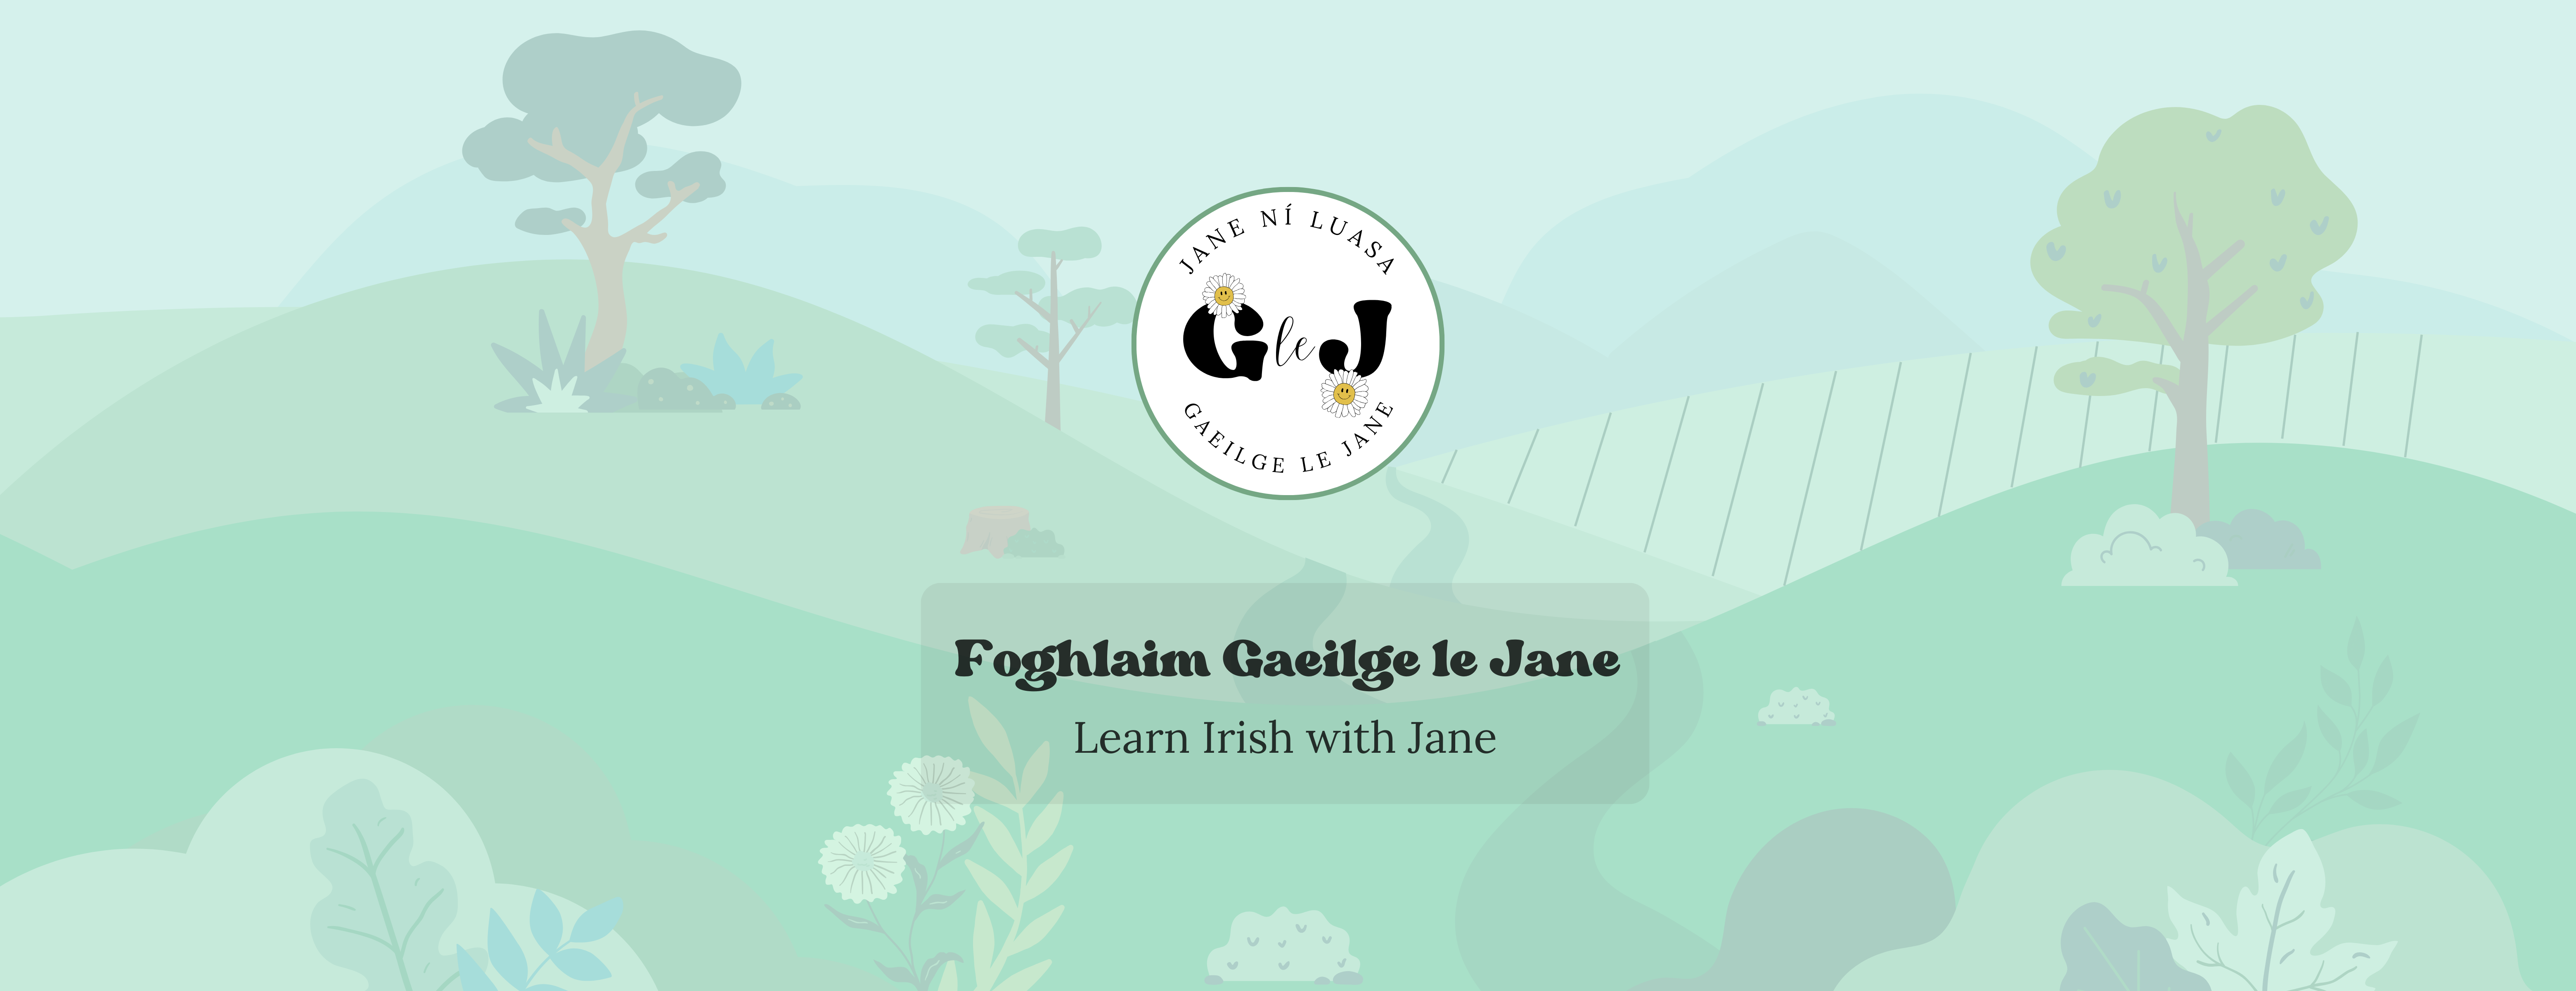 Gaeilge le Jane logo with Ireland